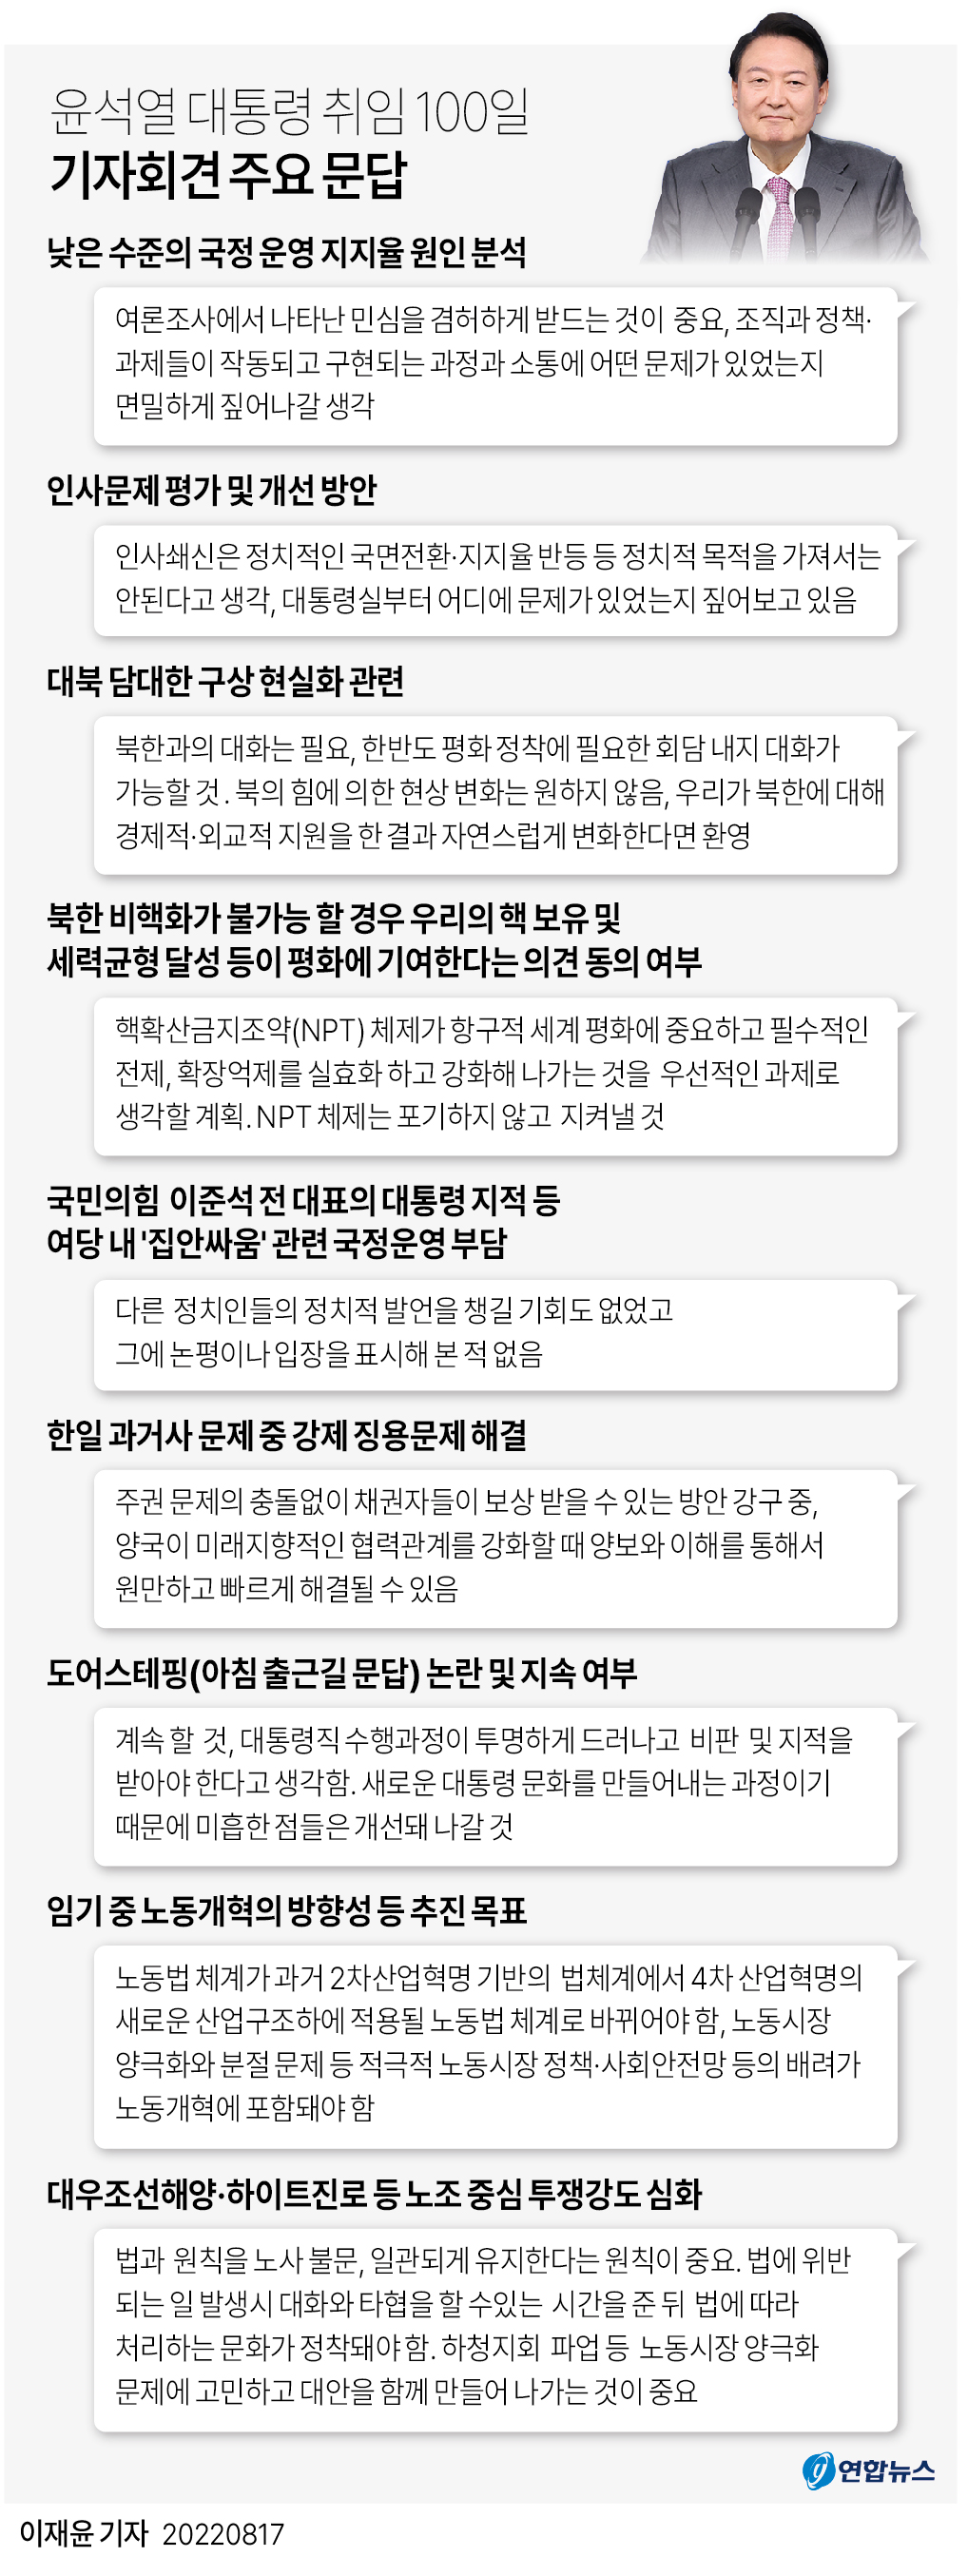  윤석열 대통령 취임 100일 기자회견 주요 문답